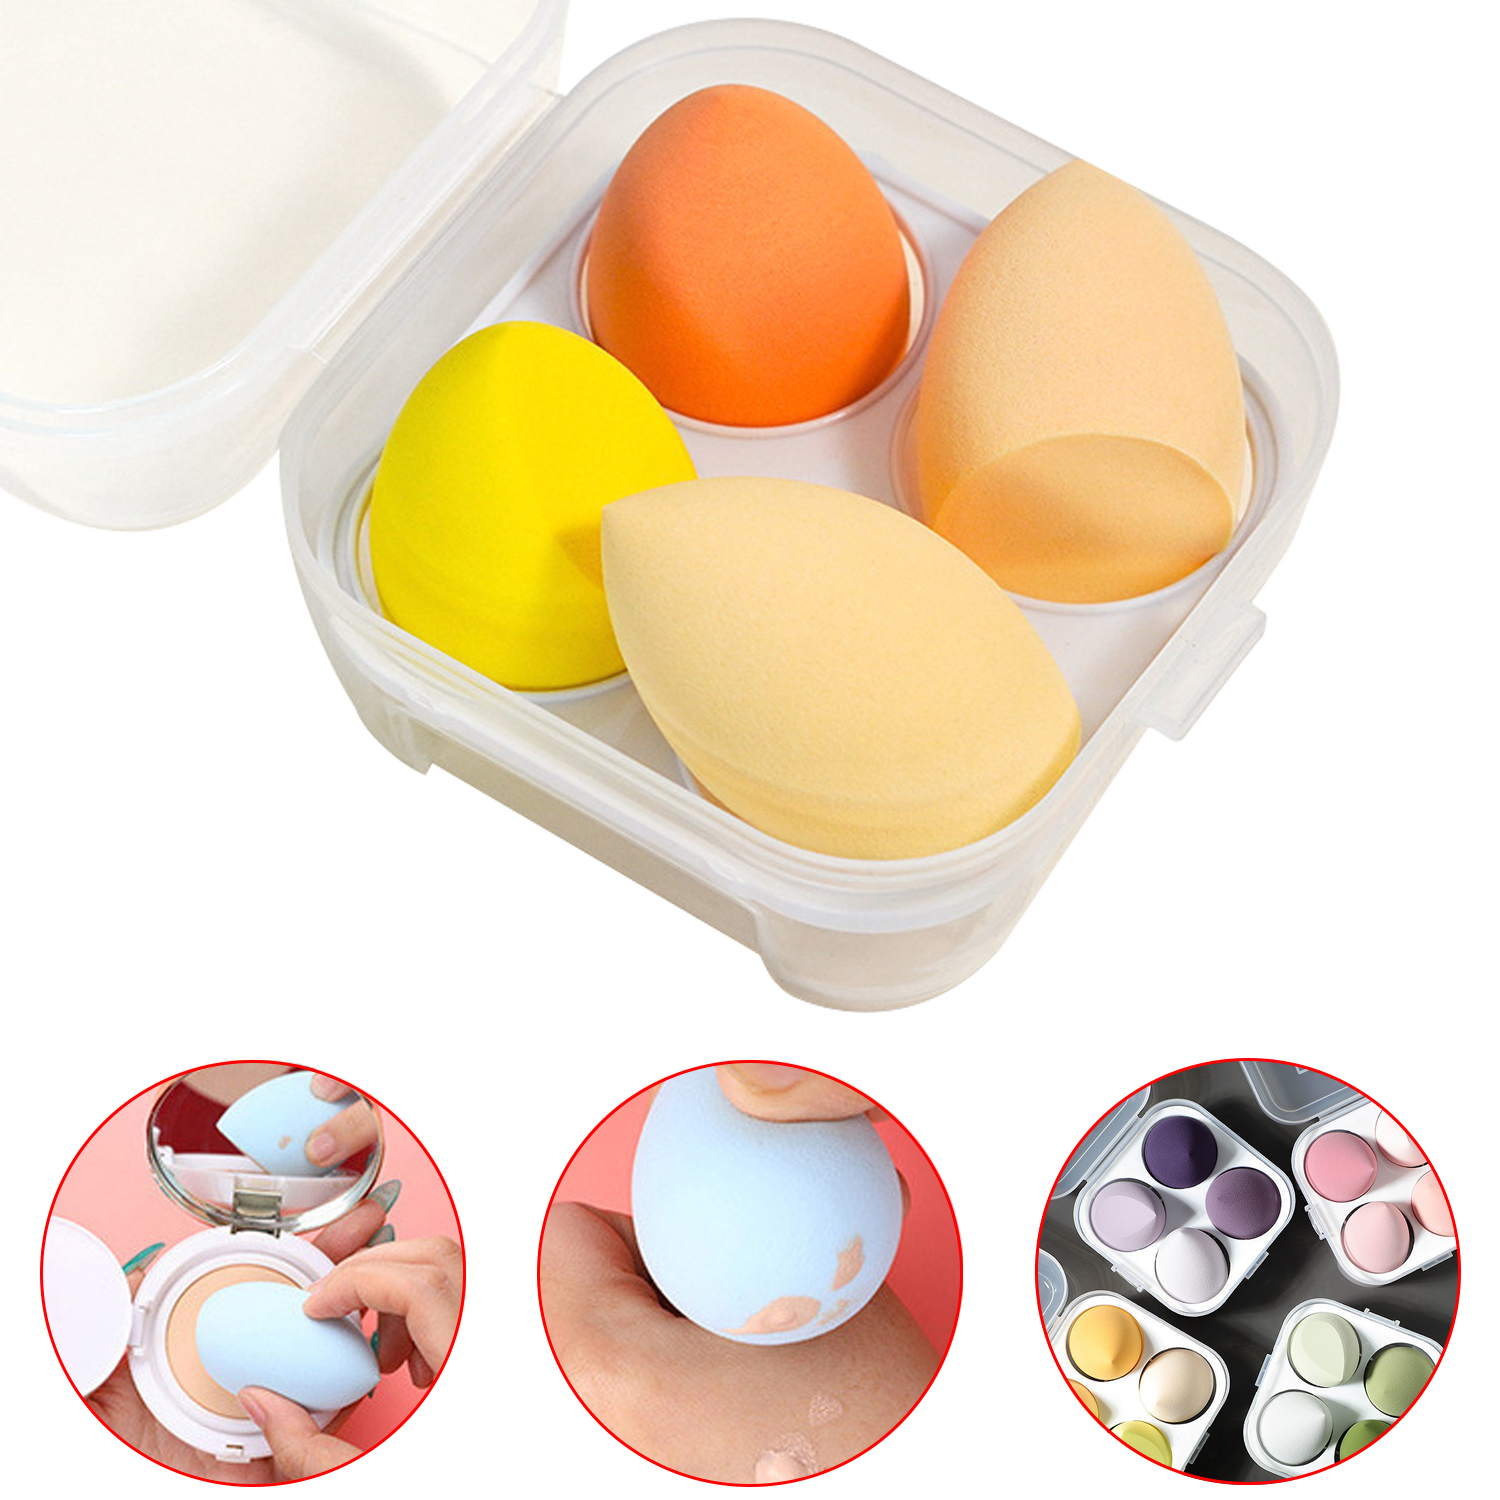 Venta al por mayor de esponjas de belleza con caja de huevos, base Facial de belleza, juego de licuadora de esponja de maquillaje facial 